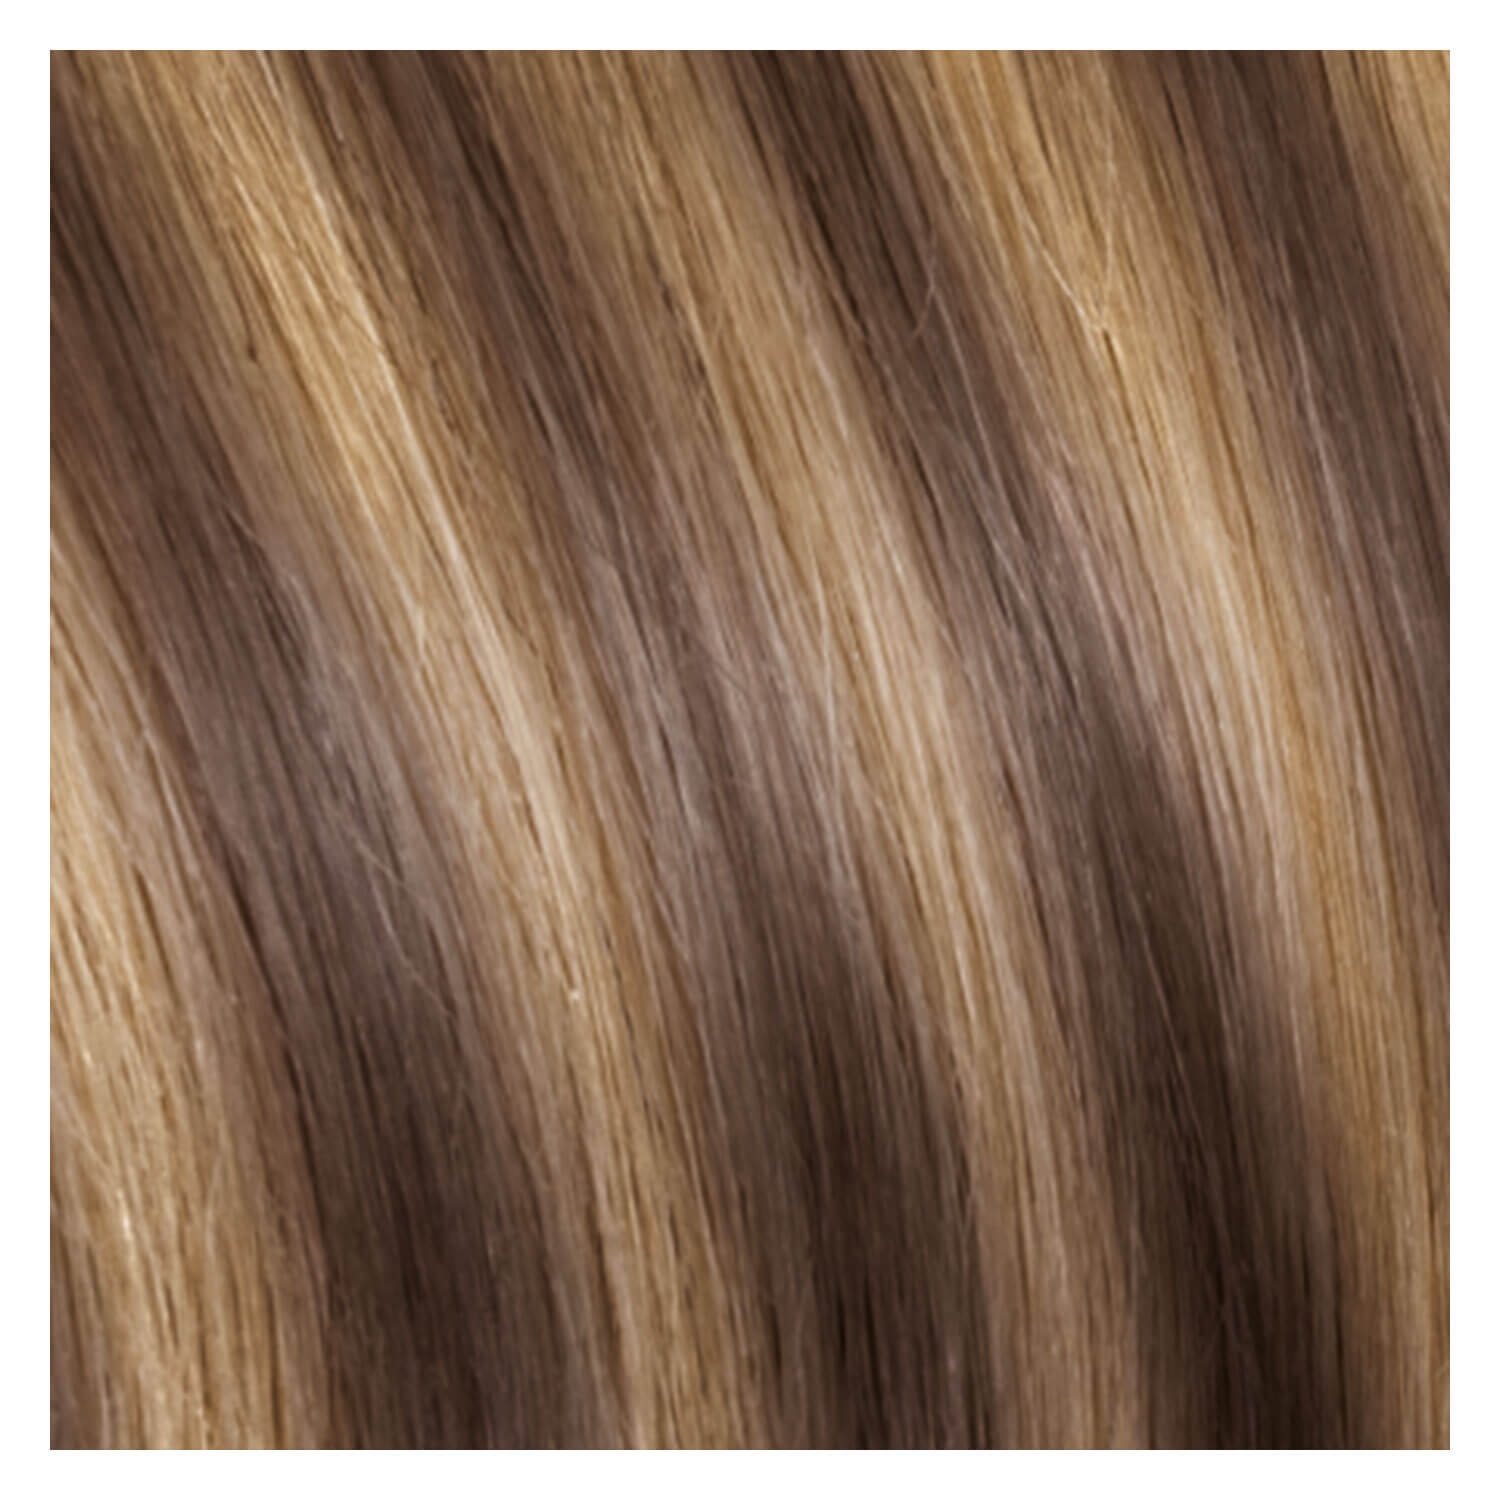 Produktbild von SHE Clip In-System Hair Extensions - 9-teiliges Set M8/26 Dunkelblond/Honigblond 50/55cm